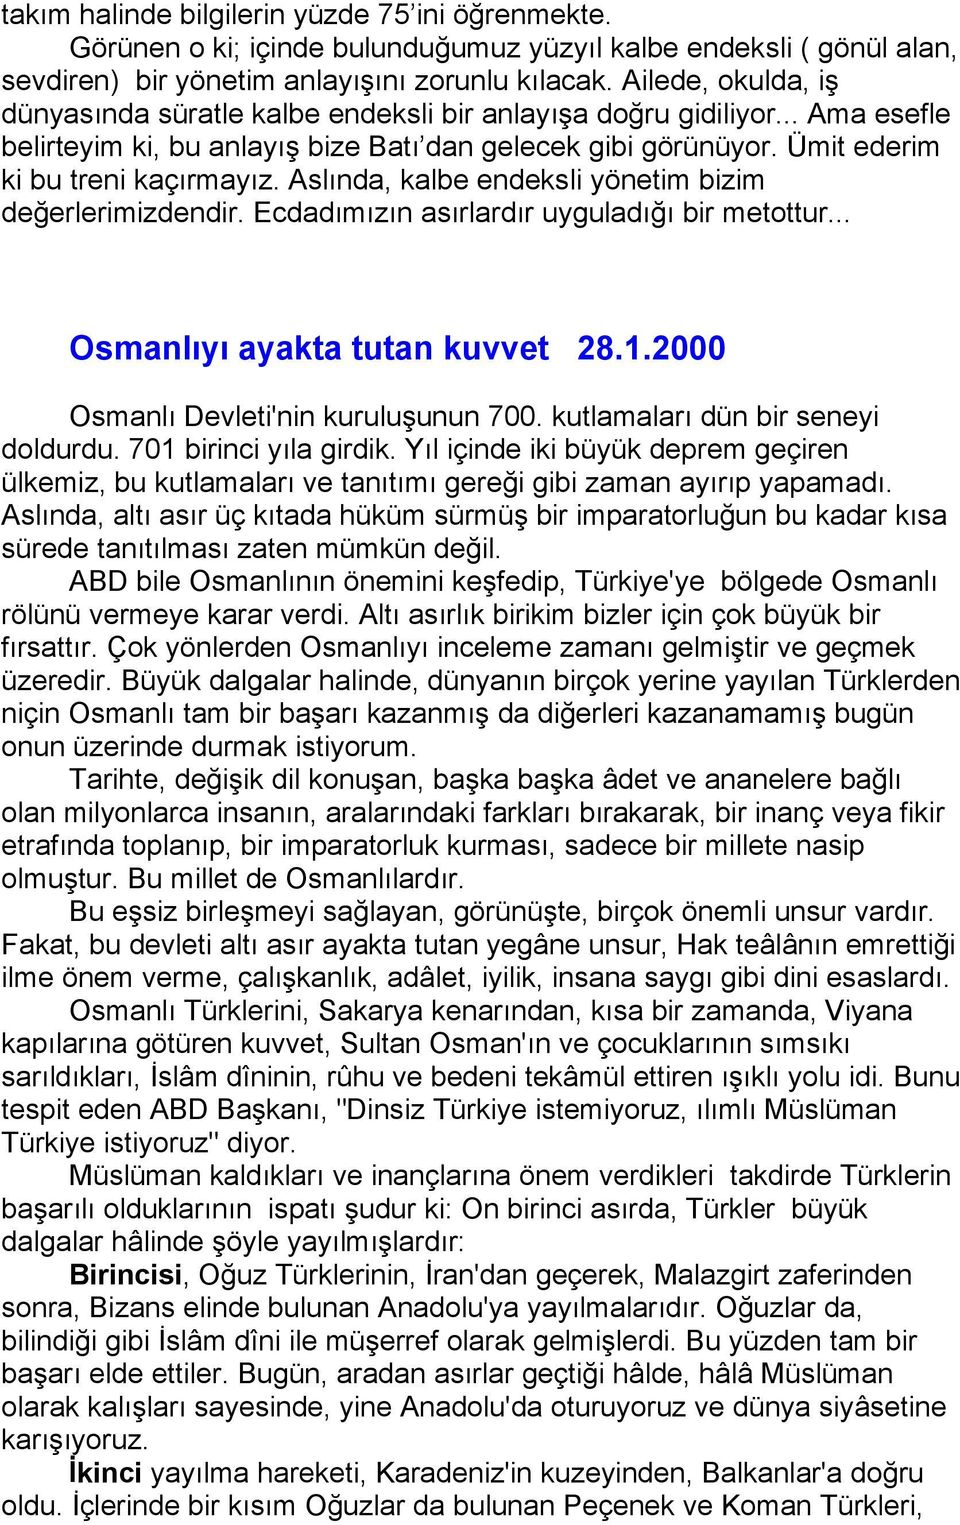 Aslında, kalbe endeksli yönetim bizim değerlerimizdendir. Ecdadımızın asırlardır uyguladığı bir metottur... Osmanlıyı ayakta tutan kuvvet 28.1.2000 Osmanlı Devleti'nin kuruluşunun 700.